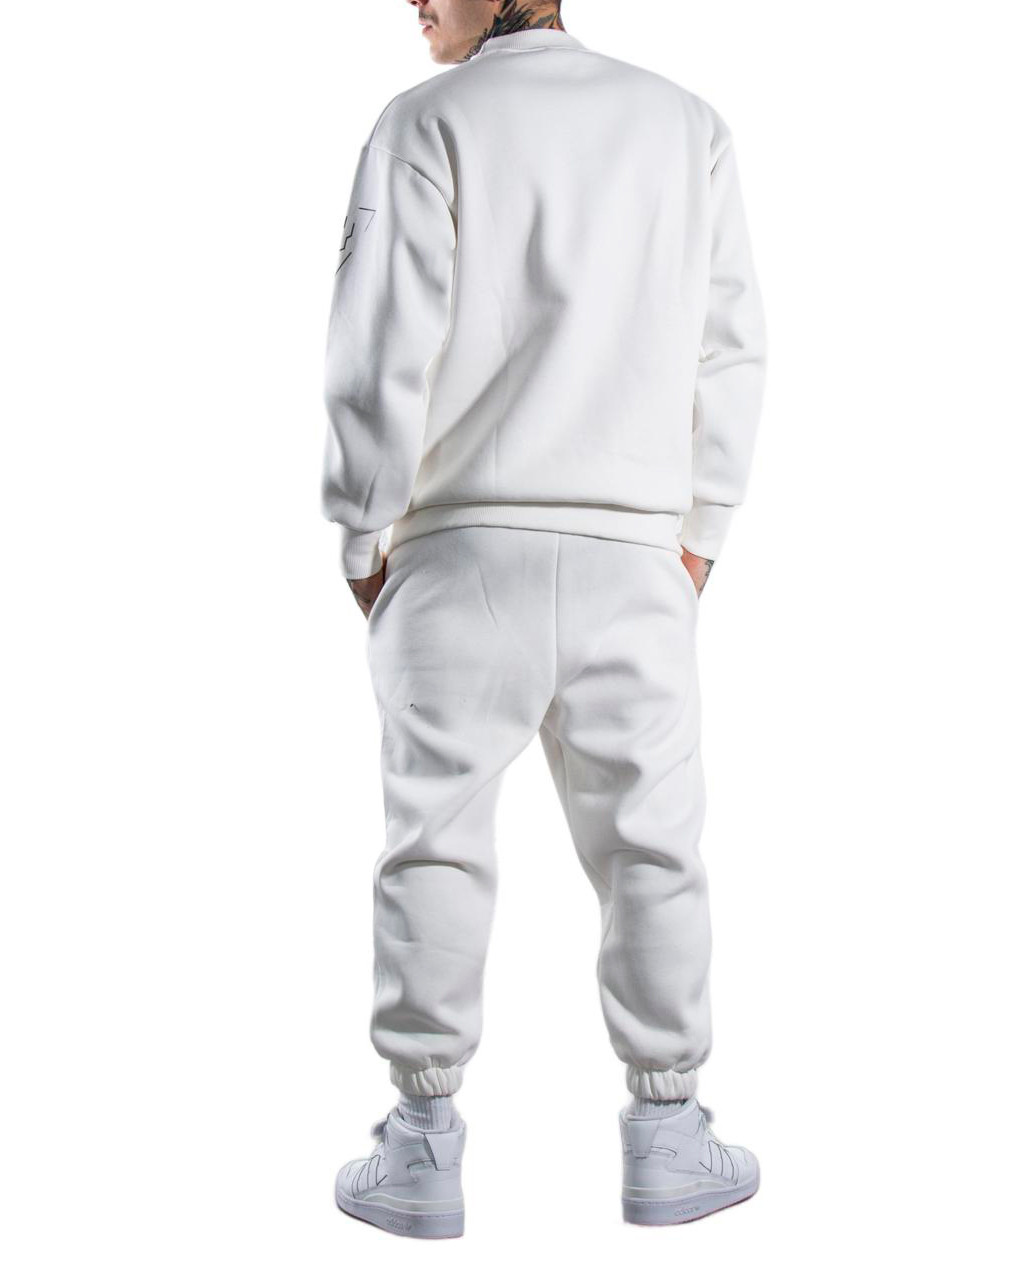 survêtements homme HYDRA CLOTHING blanc coton GR60422 - ZOOODE.COM